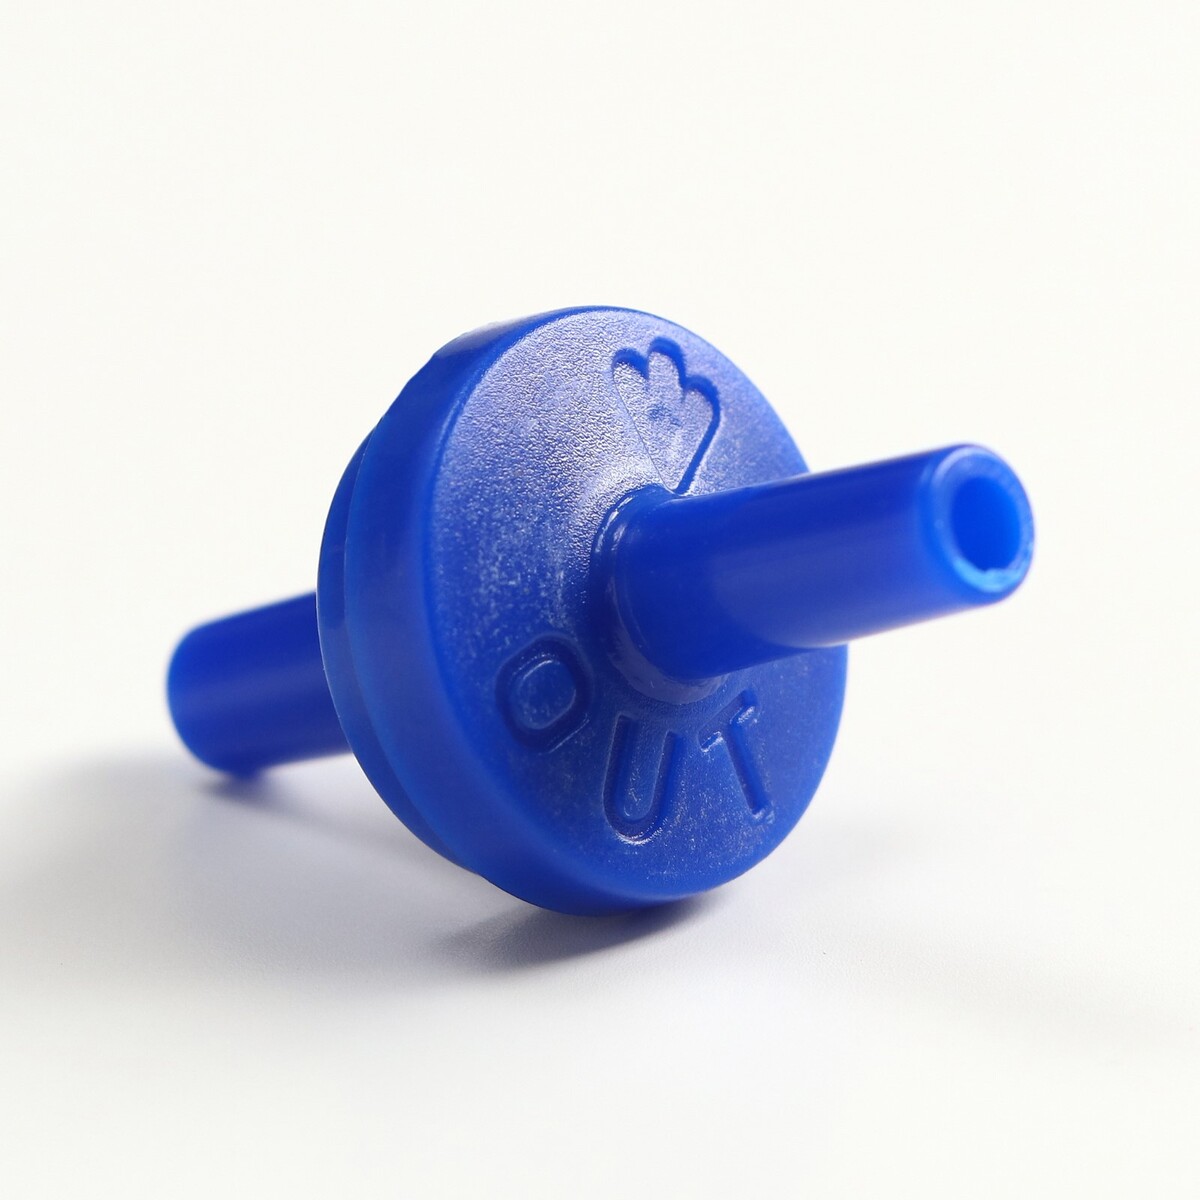 Обратный клапан ф4 мм, 1 шт клапан канализационный обратный 50 мм мультимирпласт обркл вк 50